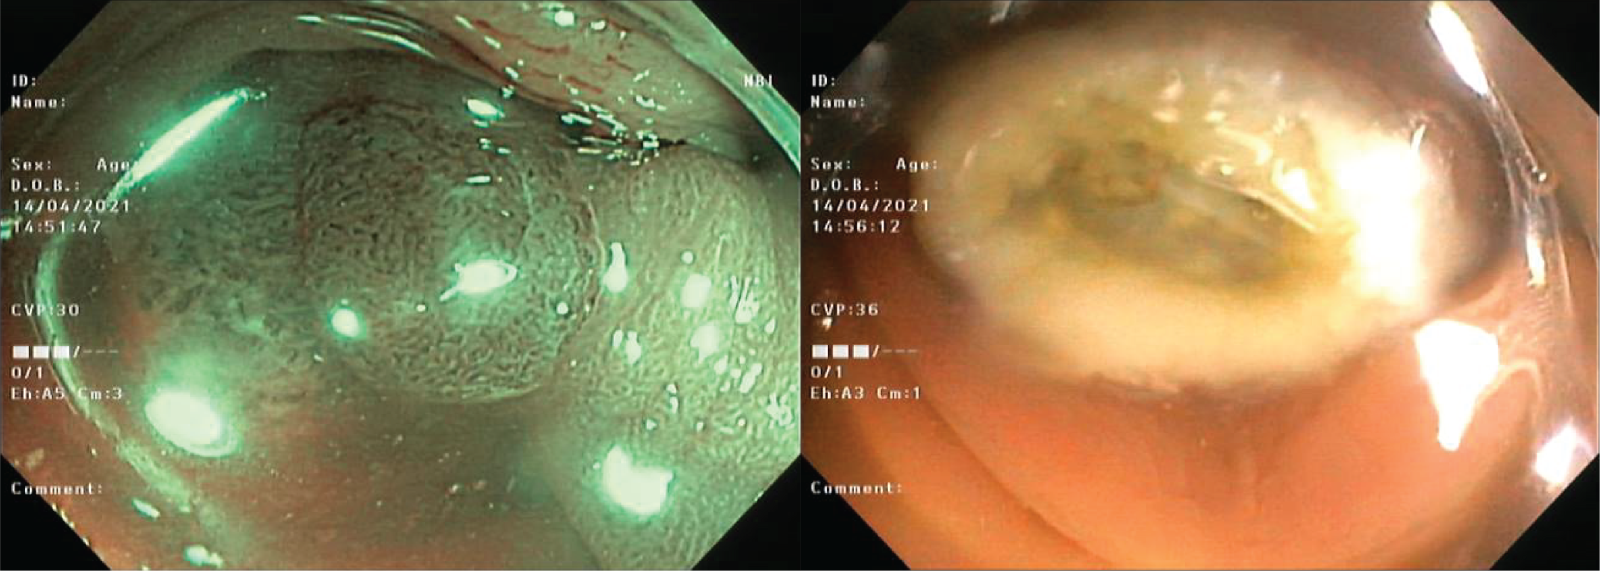 Hình ảnh polyp đại tràng phát hiện bằng ánh sáng dải tần hẹp (NBI) và hình ảnh cắt polyp qua nội soi bằng snare (ảnh theo thứ tự từ trái qua phải)